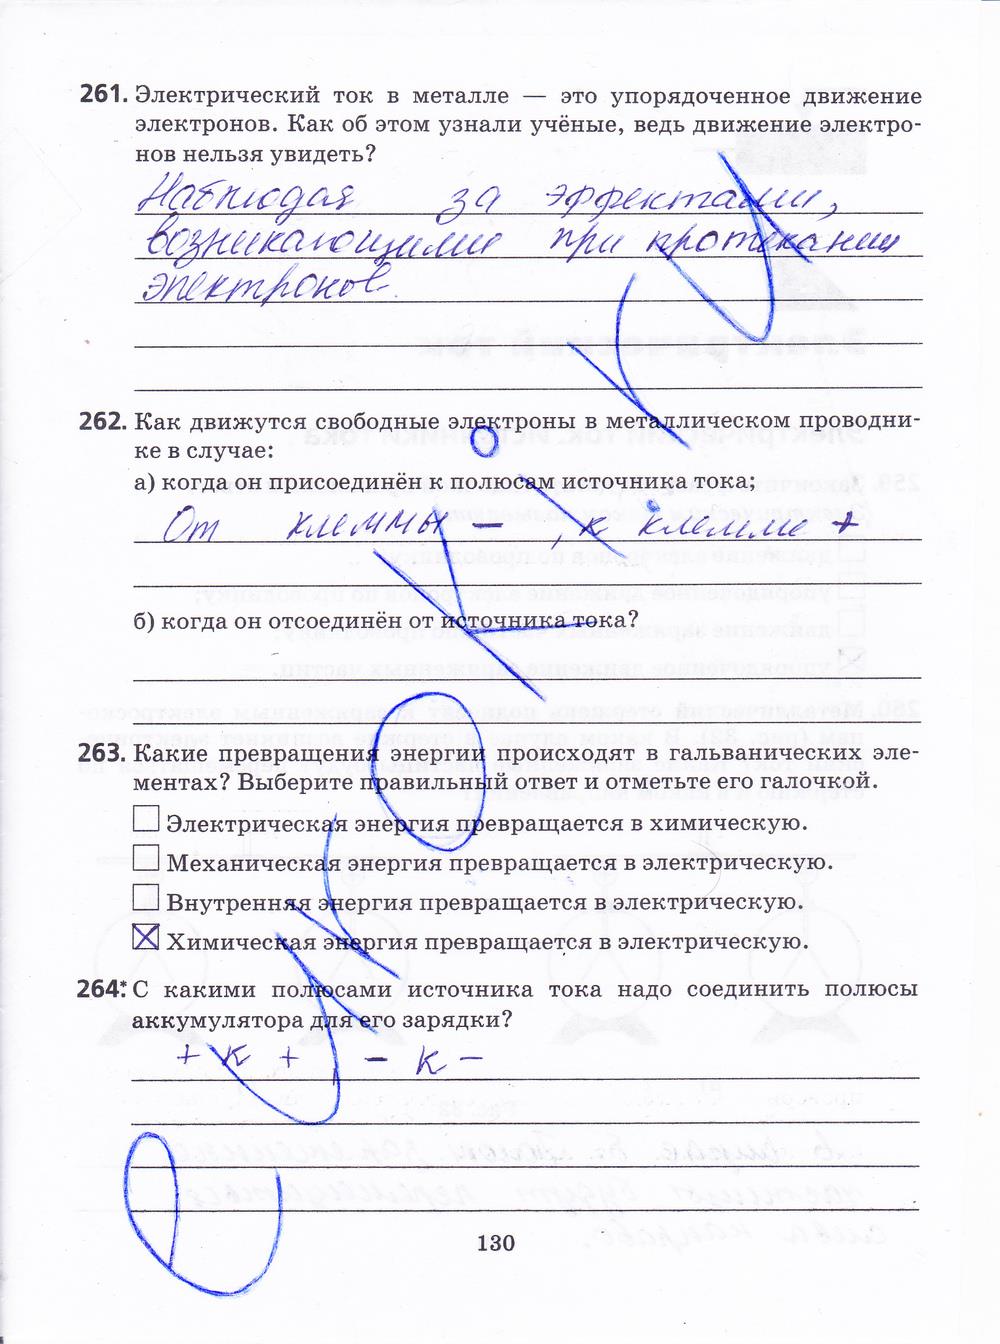 гдз 8 класс рабочая тетрадь страница 130 физика Пурышева, Важеевская